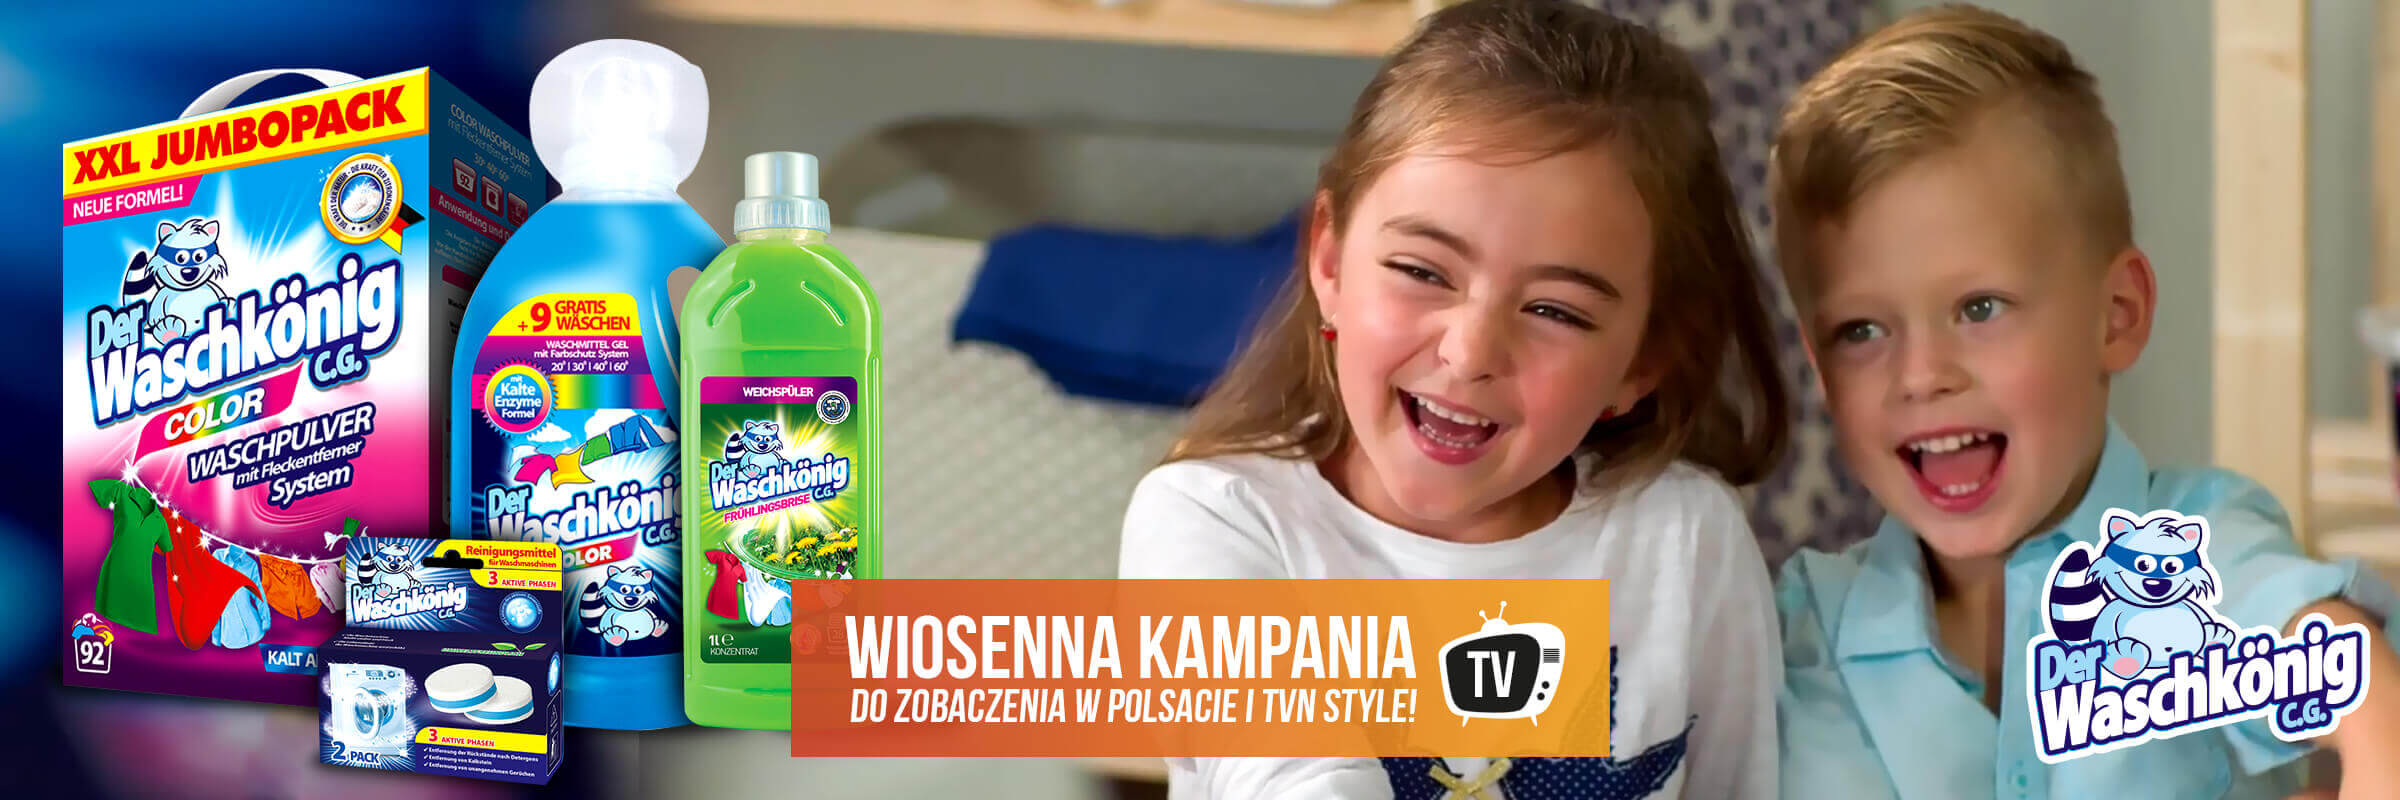 Ruszyła wiosenna kampania marki Waschkonig w polskiej TV!